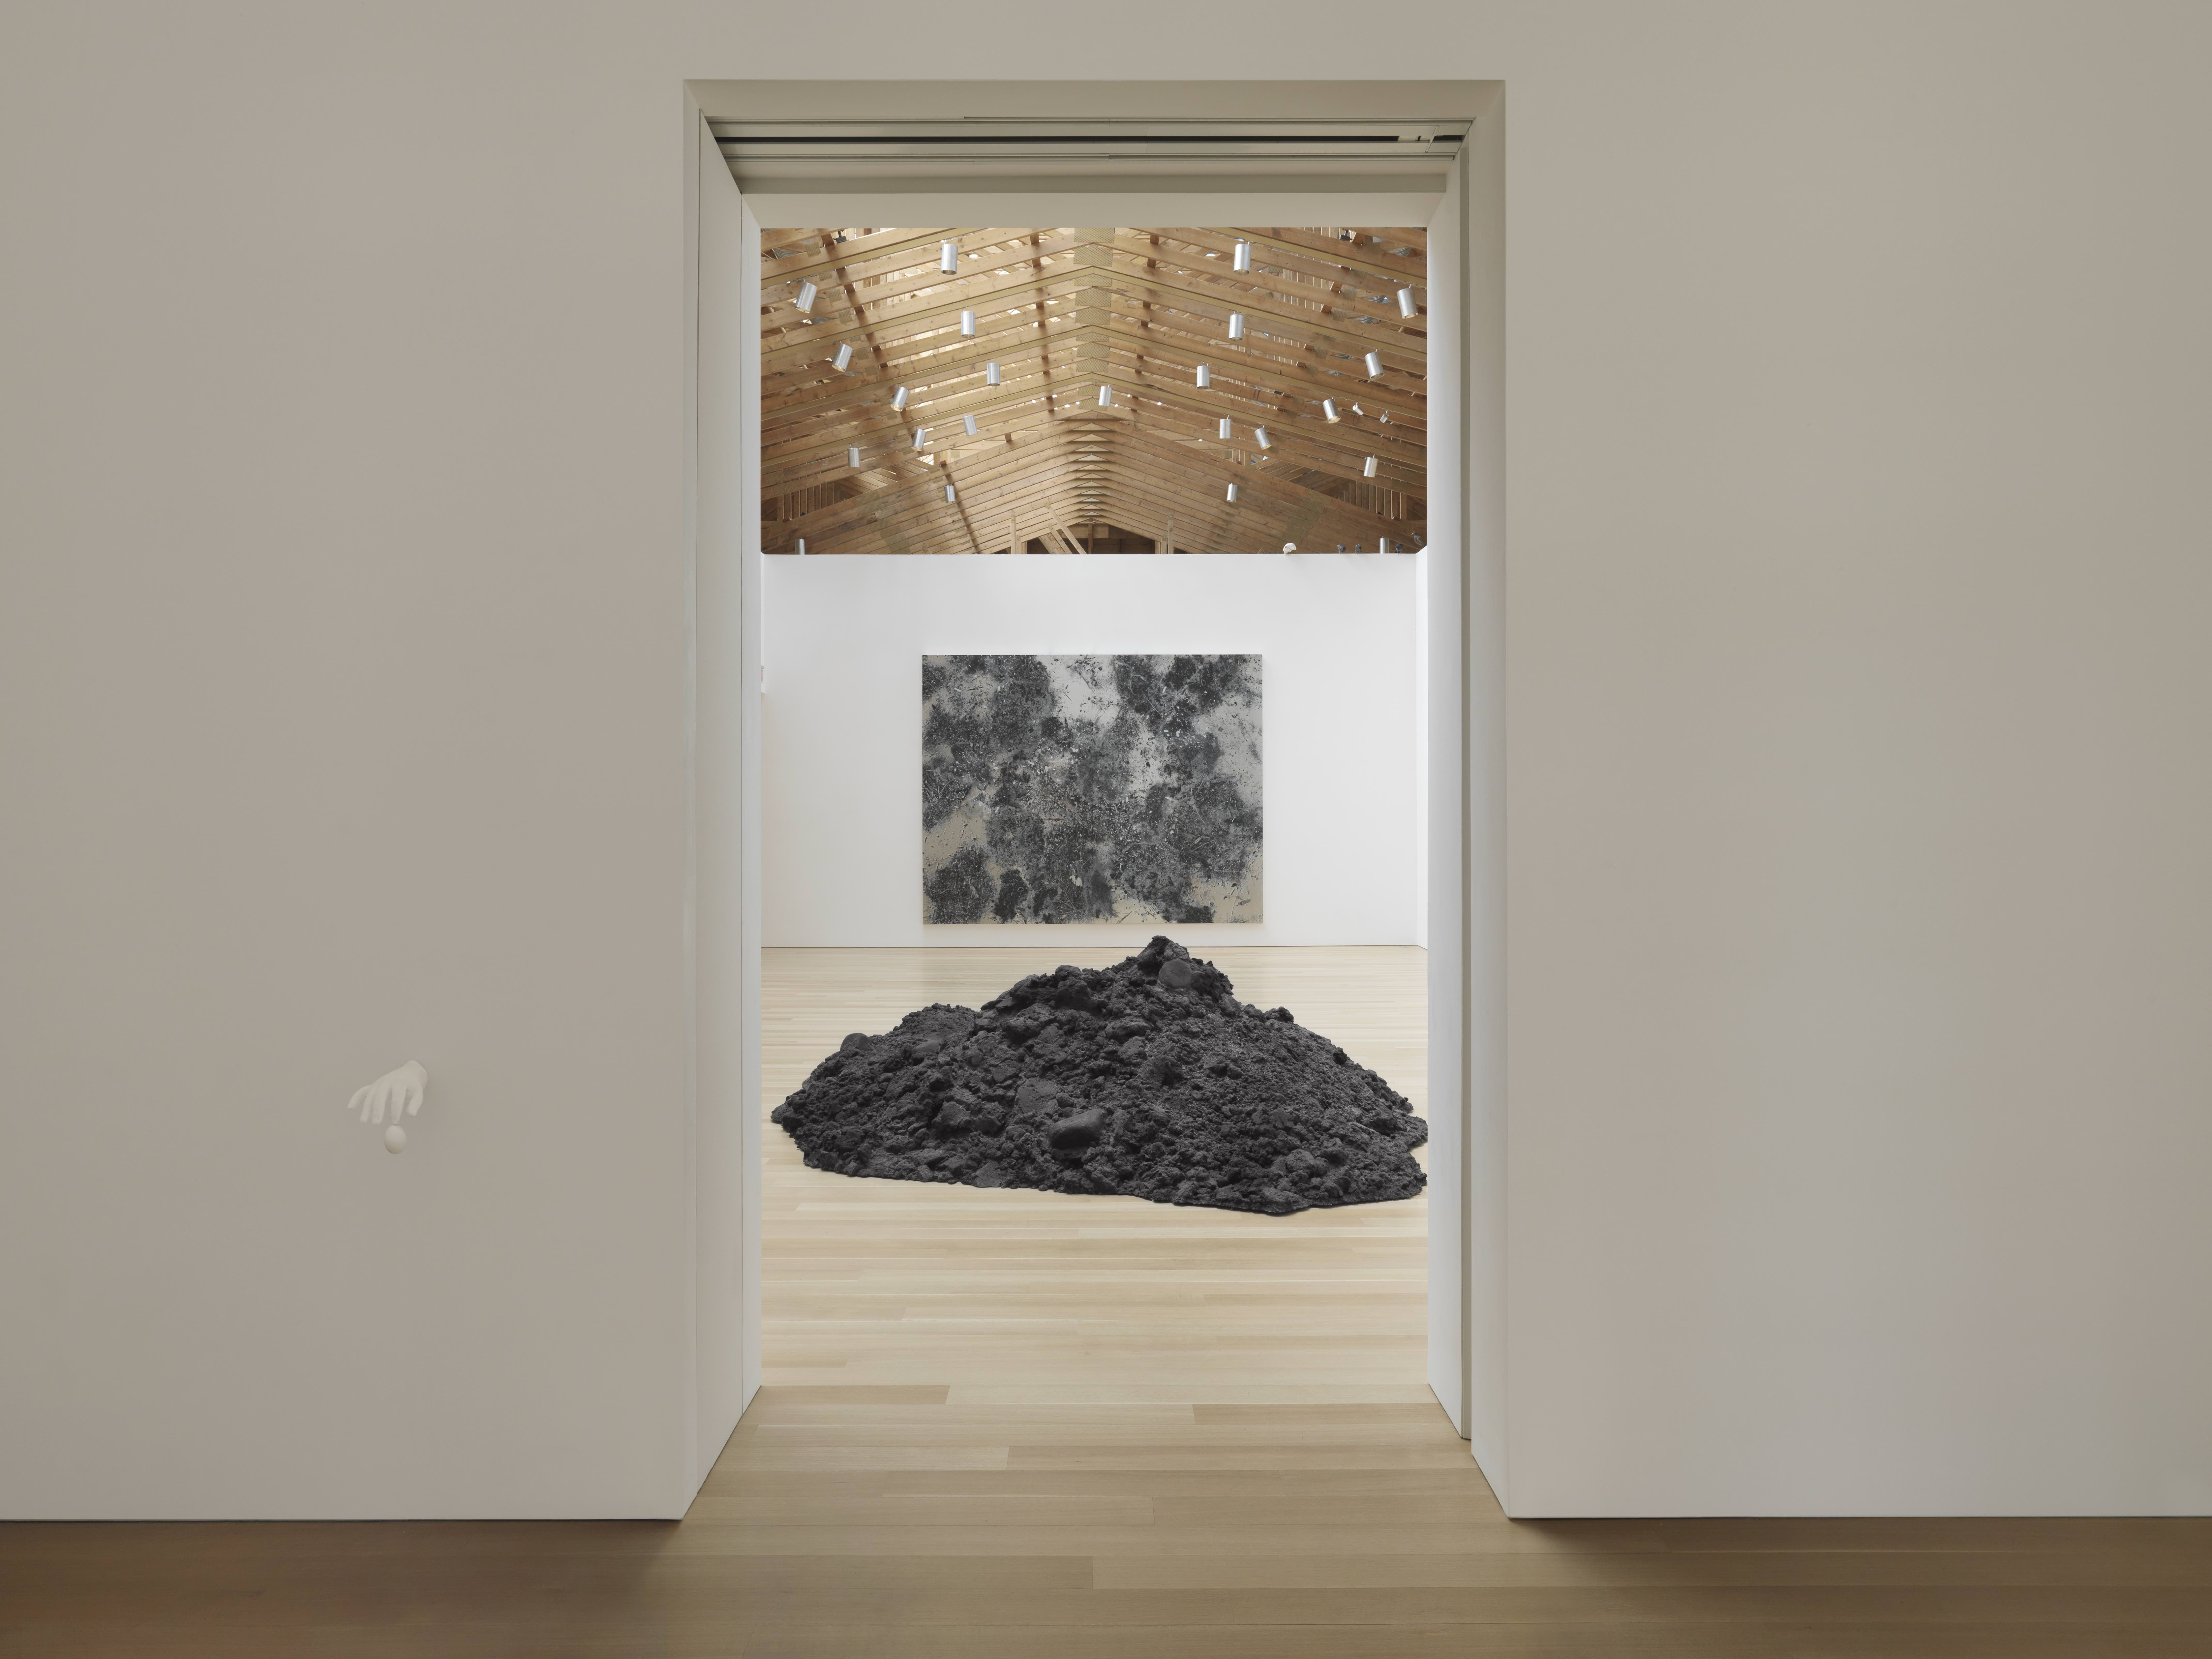 Showing: Urs Fischer – “Error” @ Brant Foundation Art Study Center